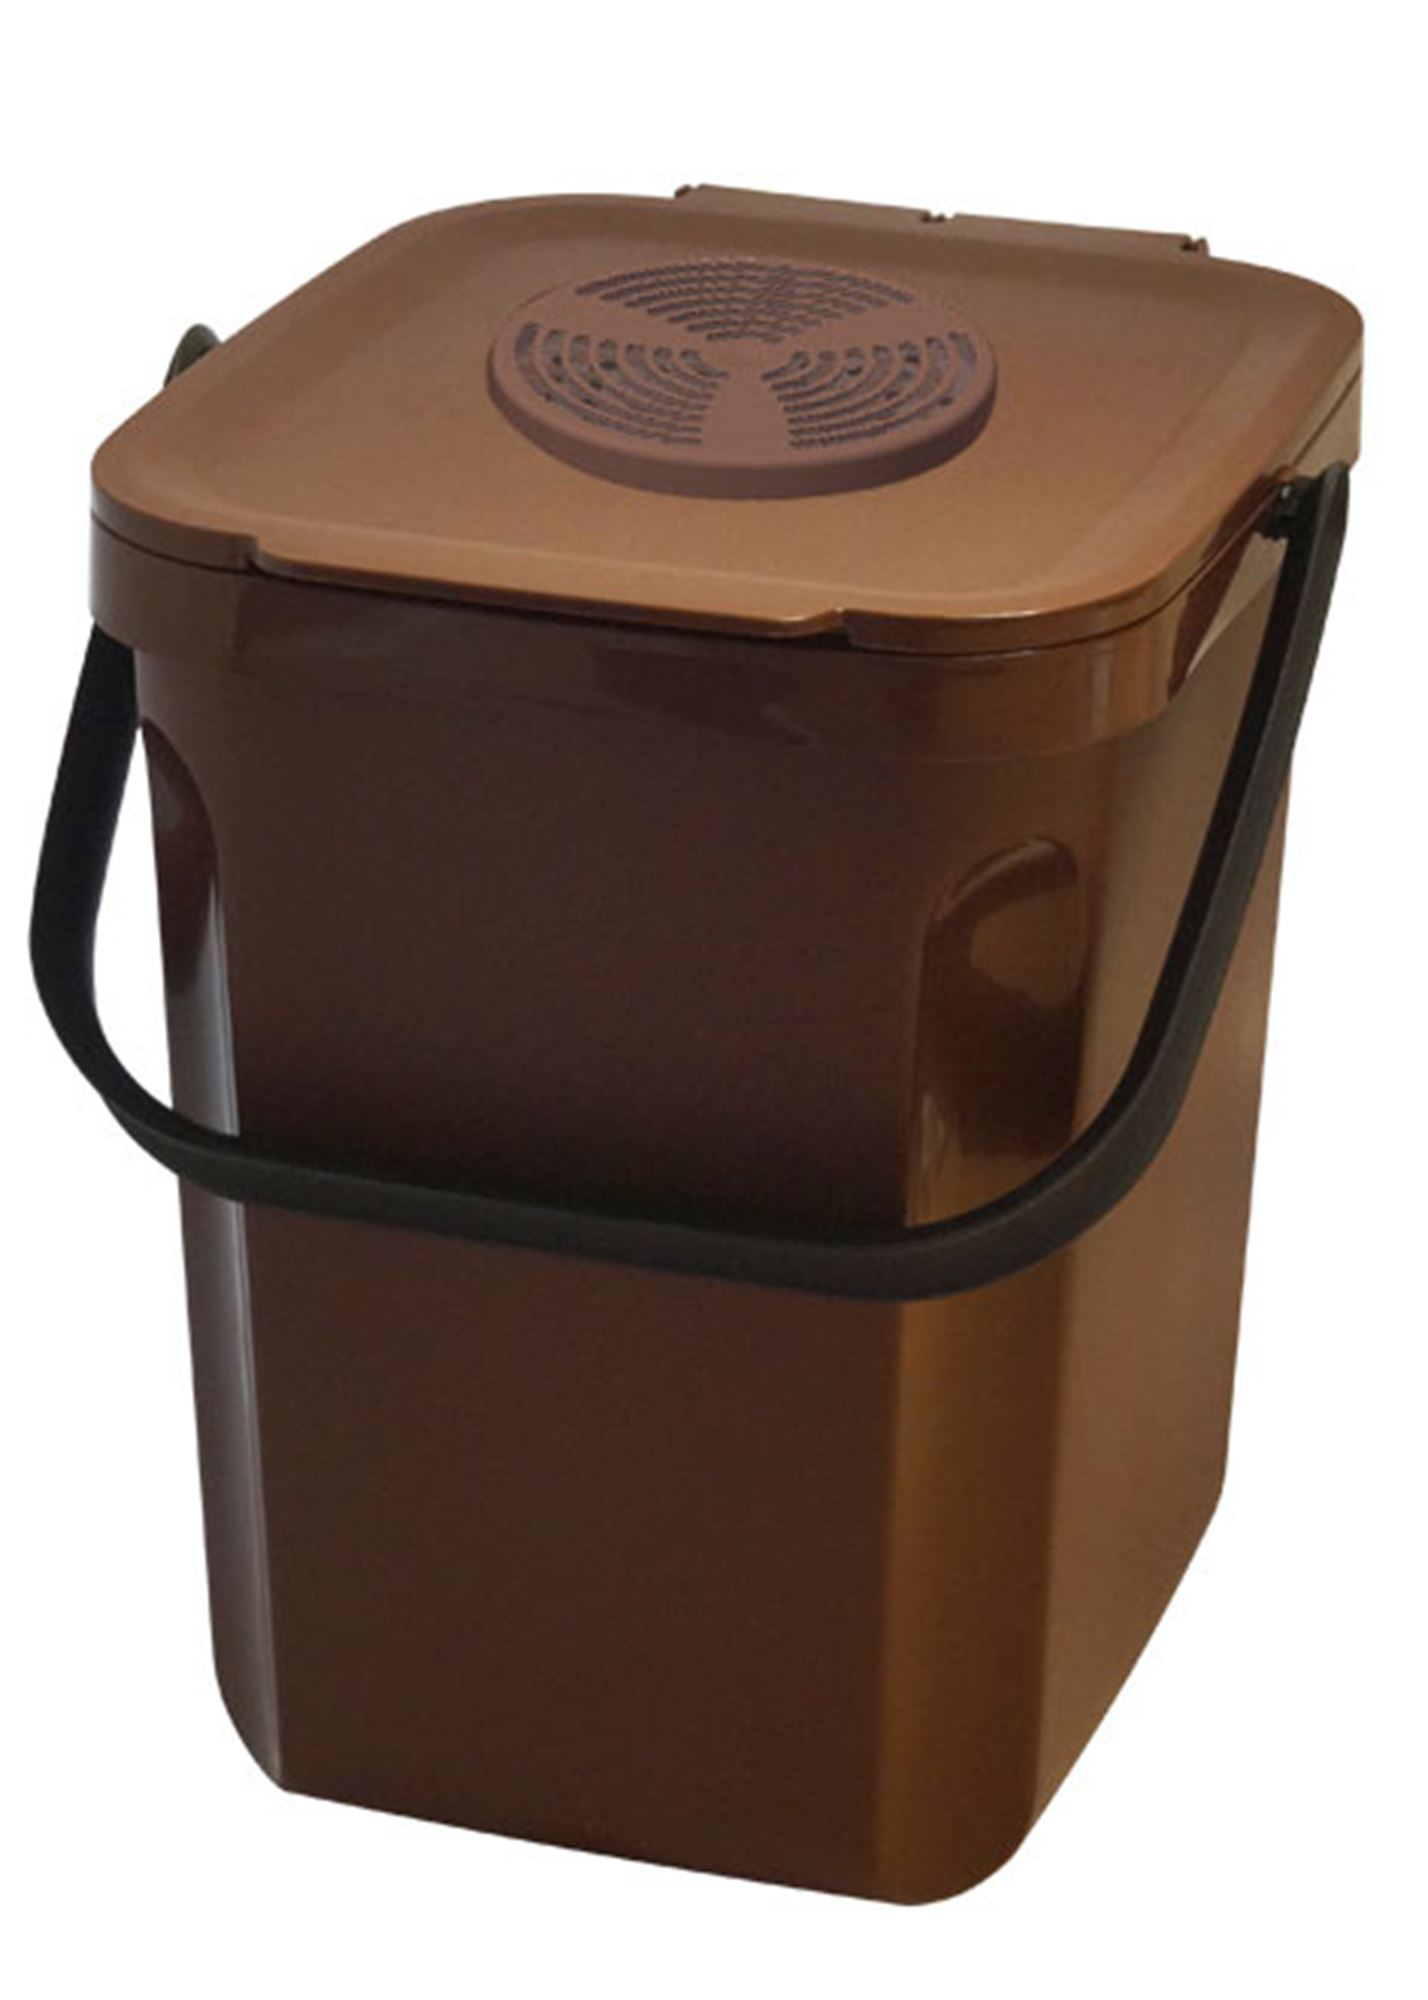 Composteur, bac, poubelle à compost de cuisine - 5 L - Inox